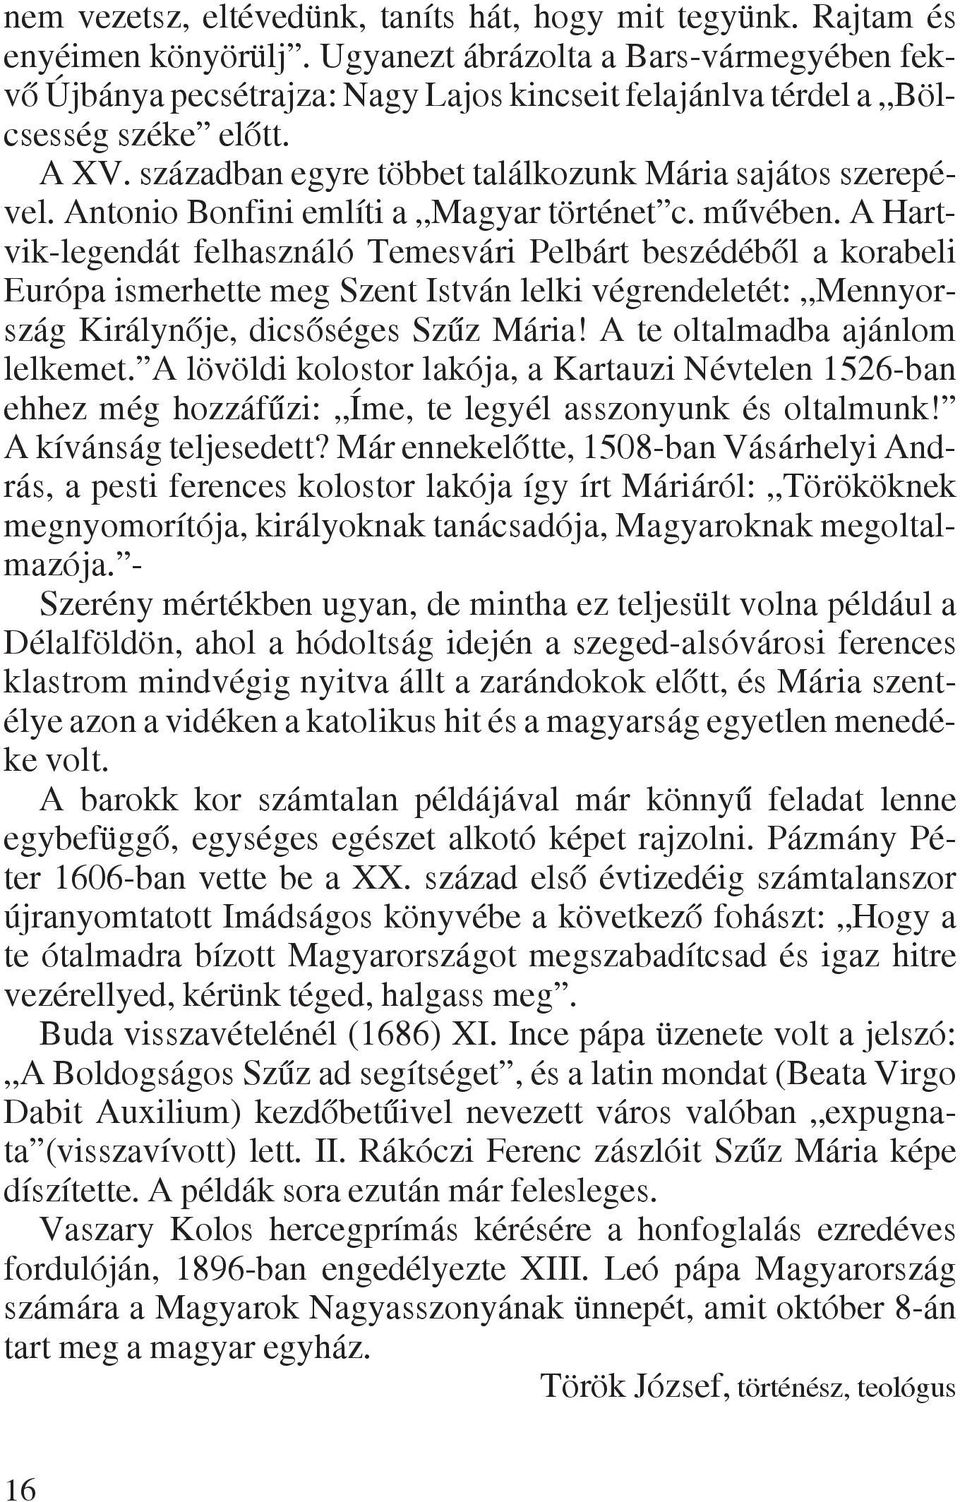 Antonio Bonfini említi a Magyar történet c. mûvében.